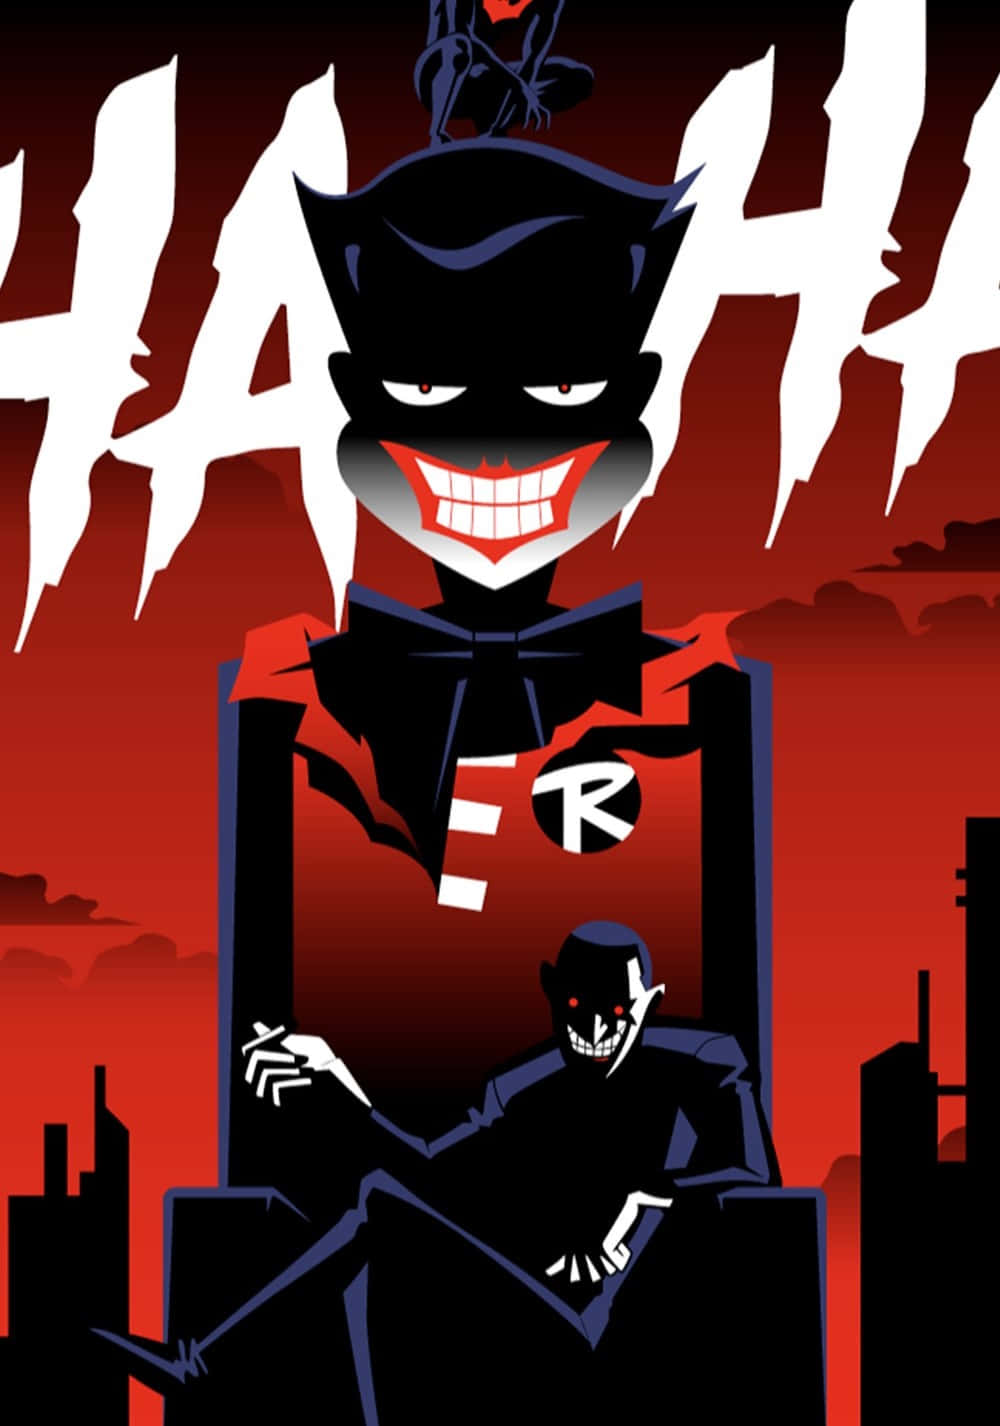 Batman Beyond faces off with The Joker in "Batman Beyond: Return of the Joker" Wallpaper